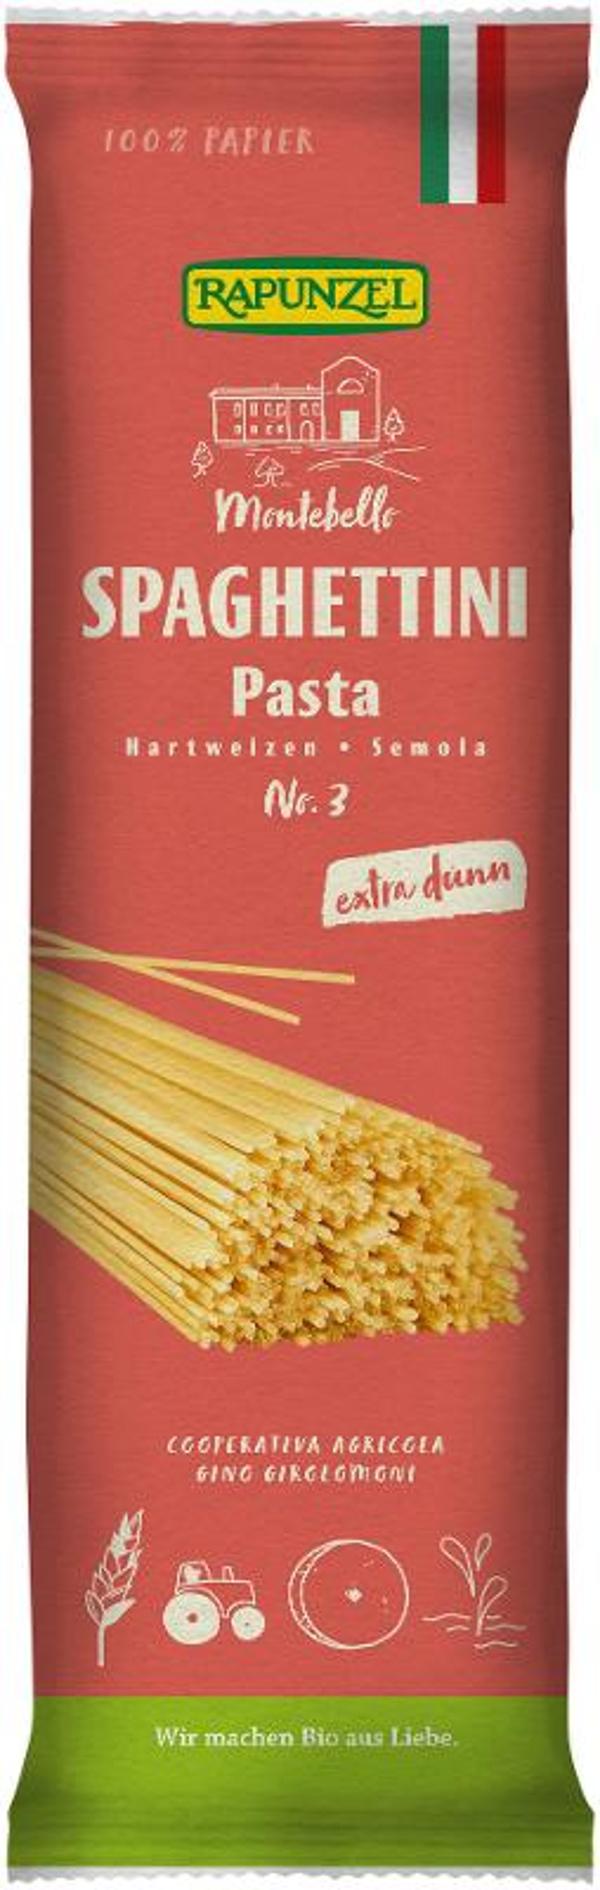 Produktfoto zu Spaghettini 500g